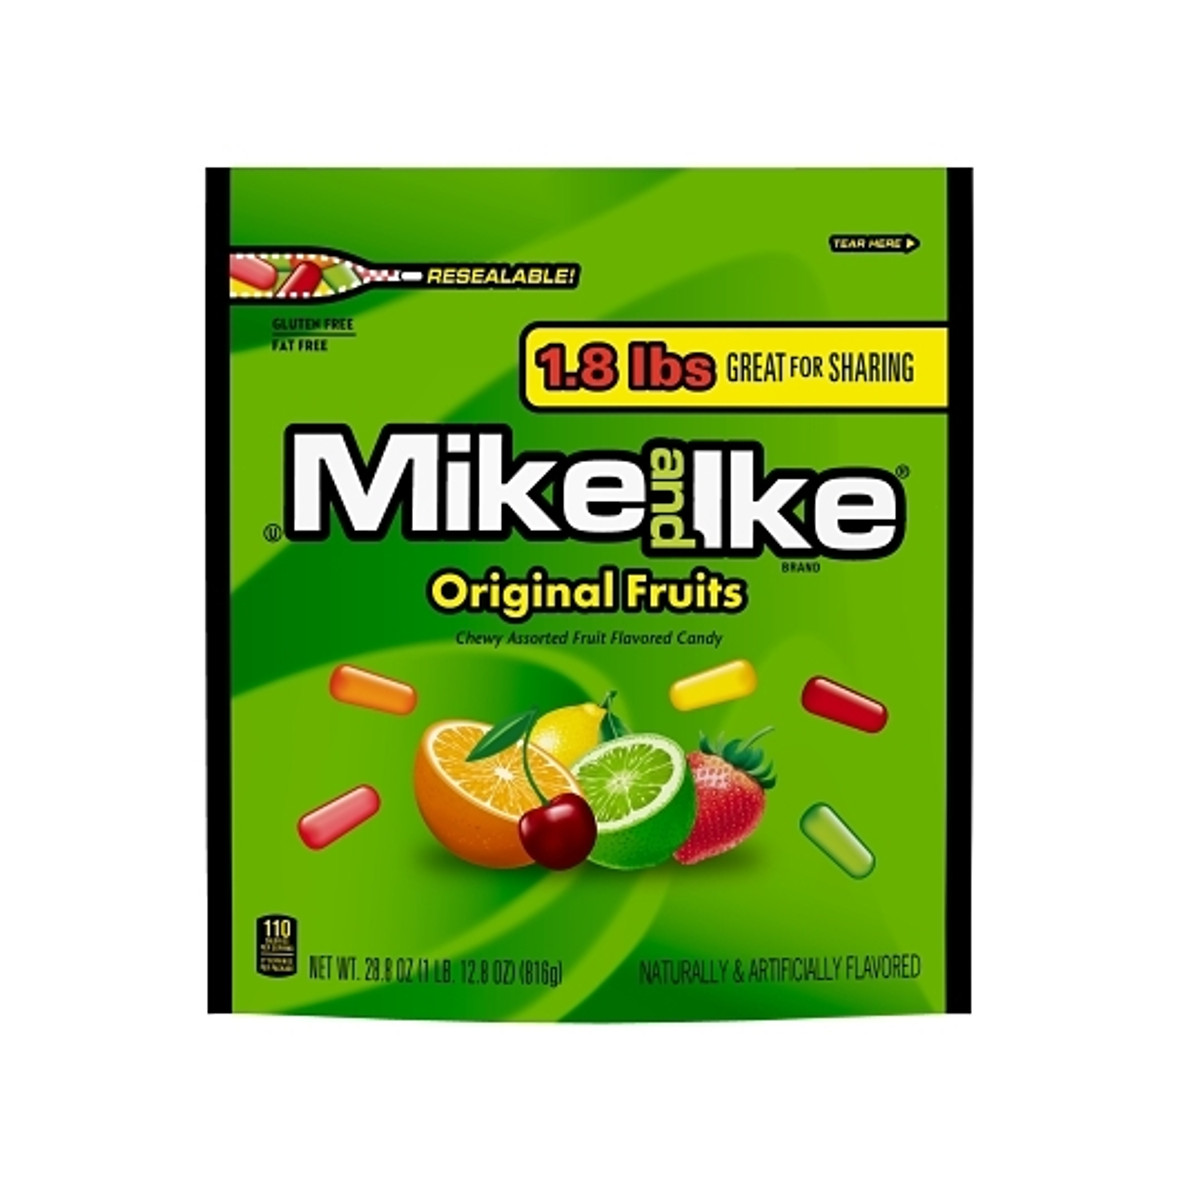 Mike & Ike Original Fruits Stand Up Bag, 28.8 Ounces, 6 Per Case